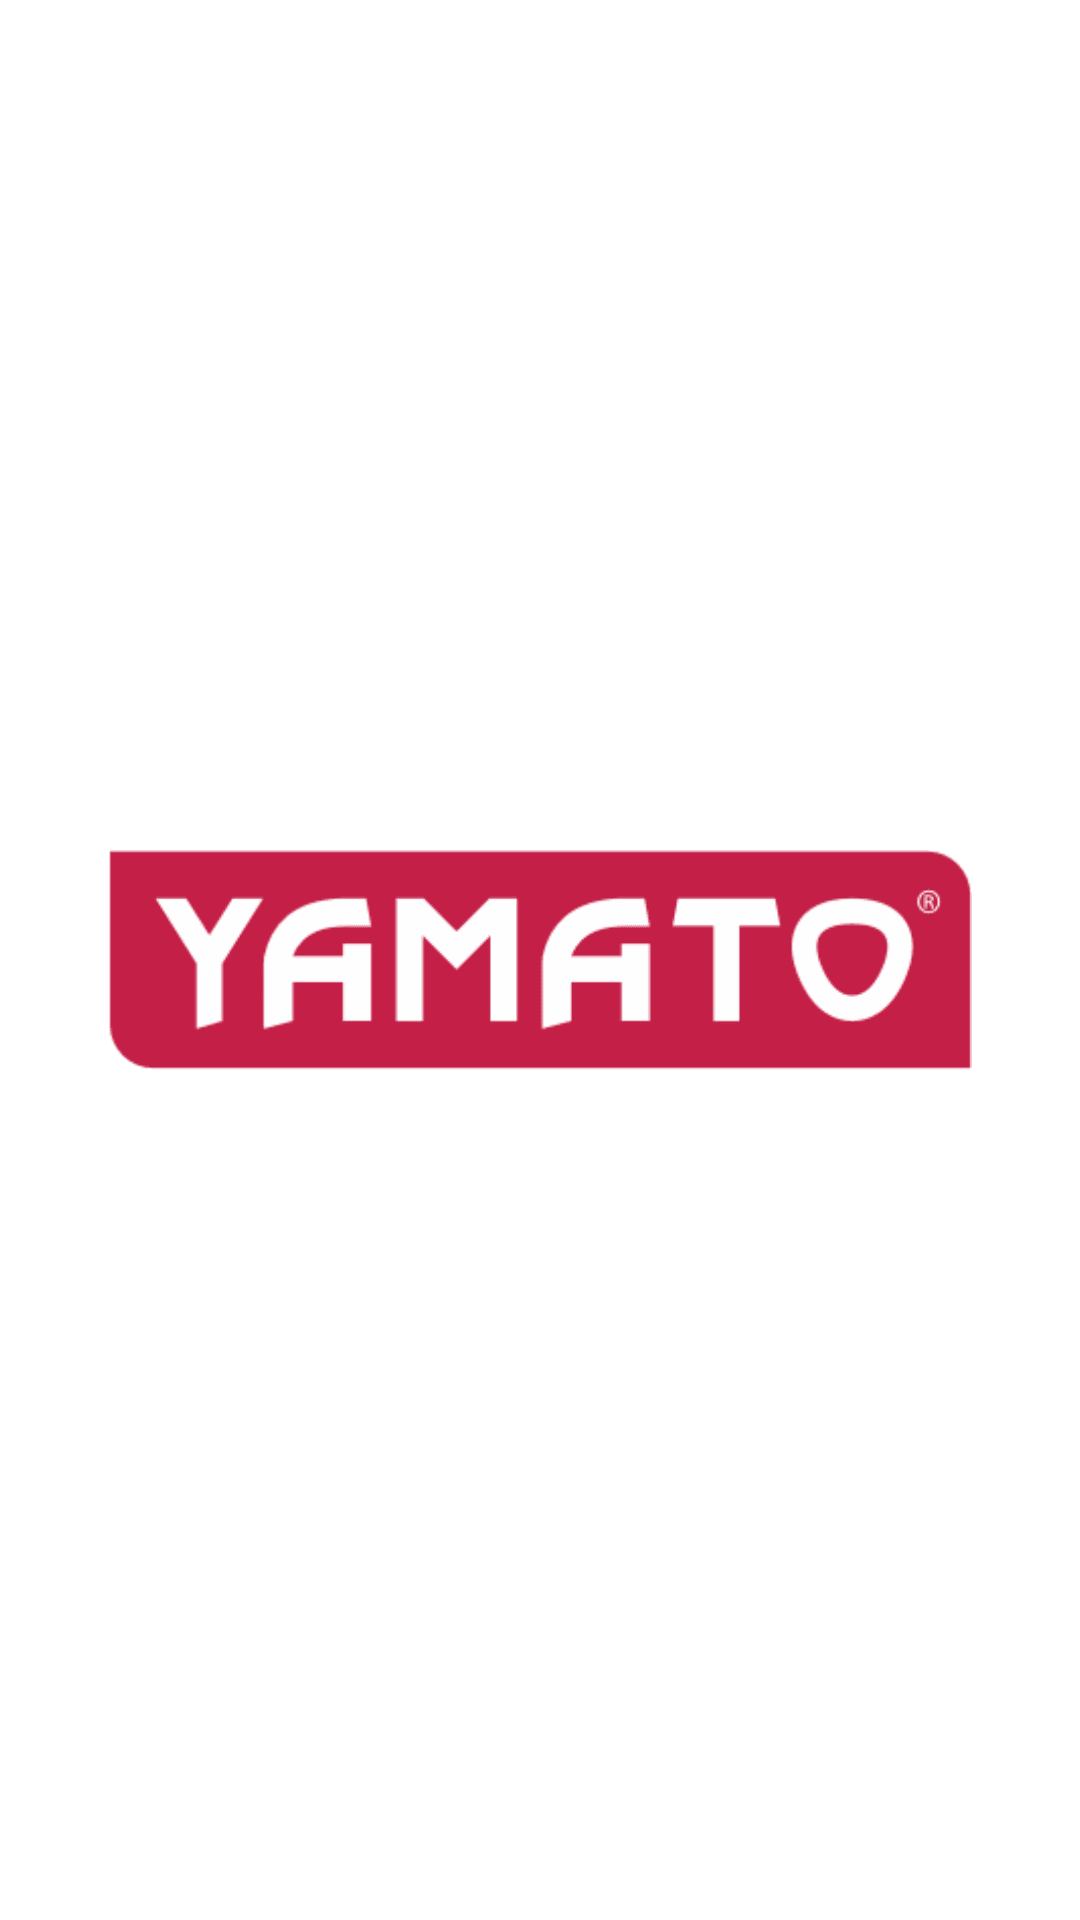 Yamato - Trapano a percussione elettrico 600Watt mandrino ø mm.13 Yamato